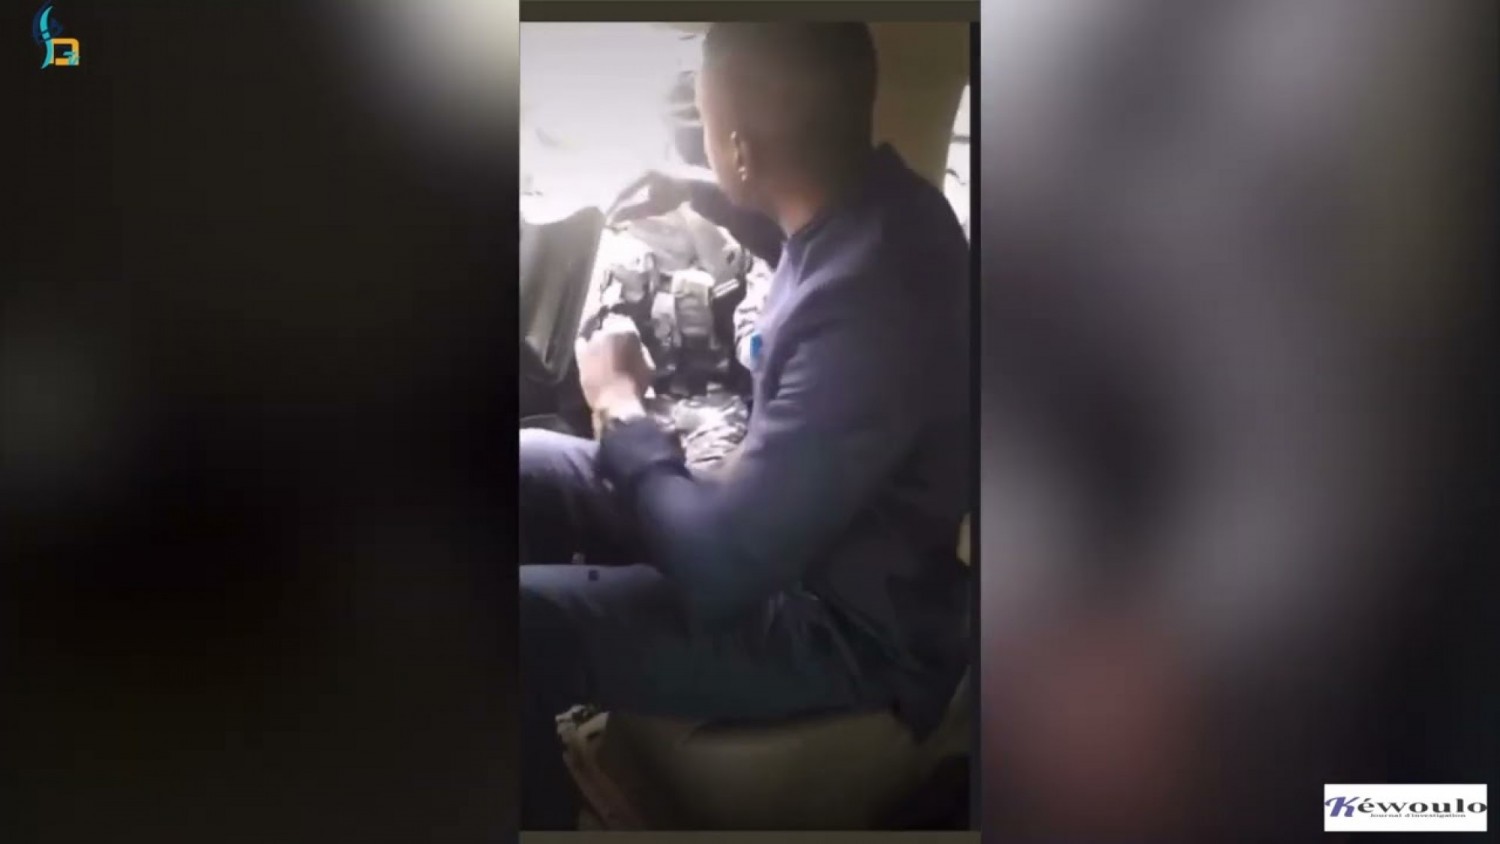 Sénégal : Journée chaude à Dakar , Ousmane Sonko extrait de force de son véhicule par des gendarmes